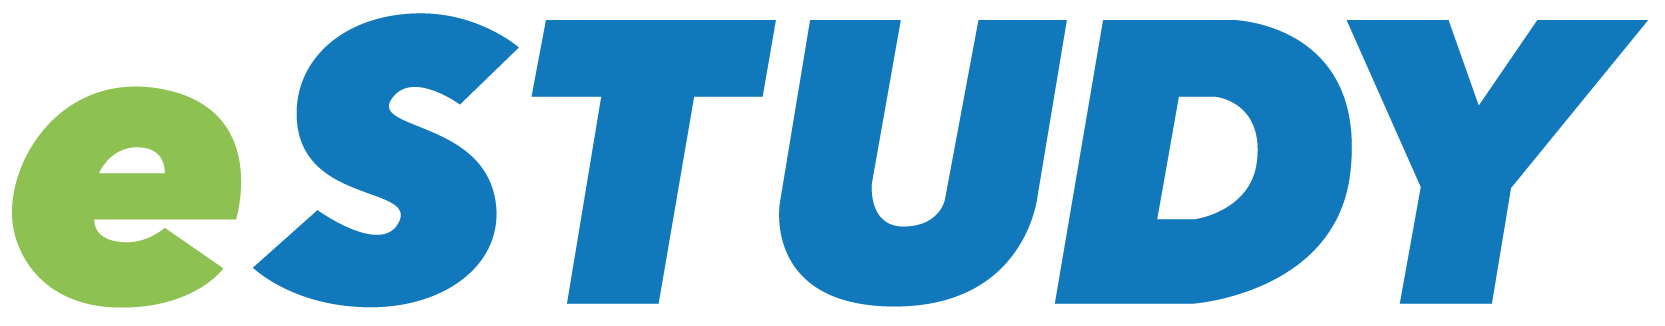 eStudy Logo